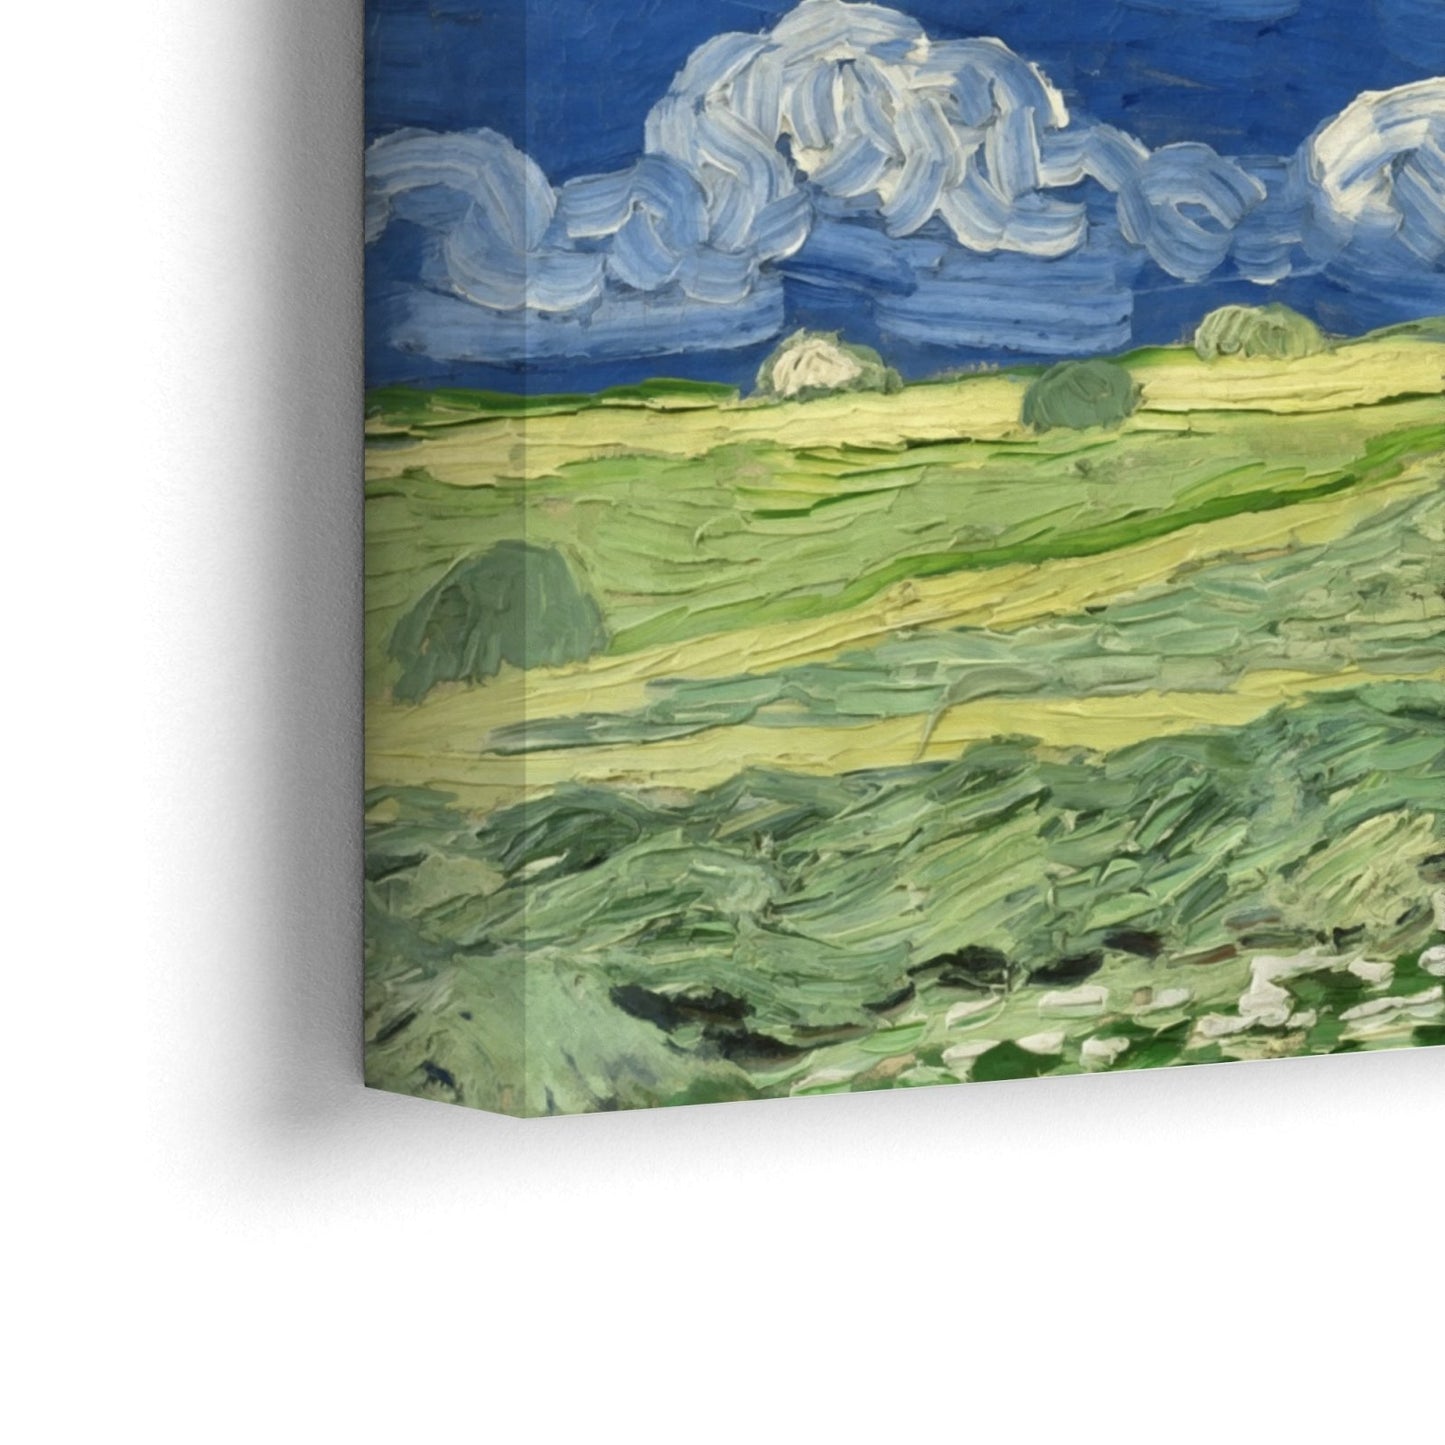 Campos de trigo bajo nubes de tormenta, Vincent Van Gogh